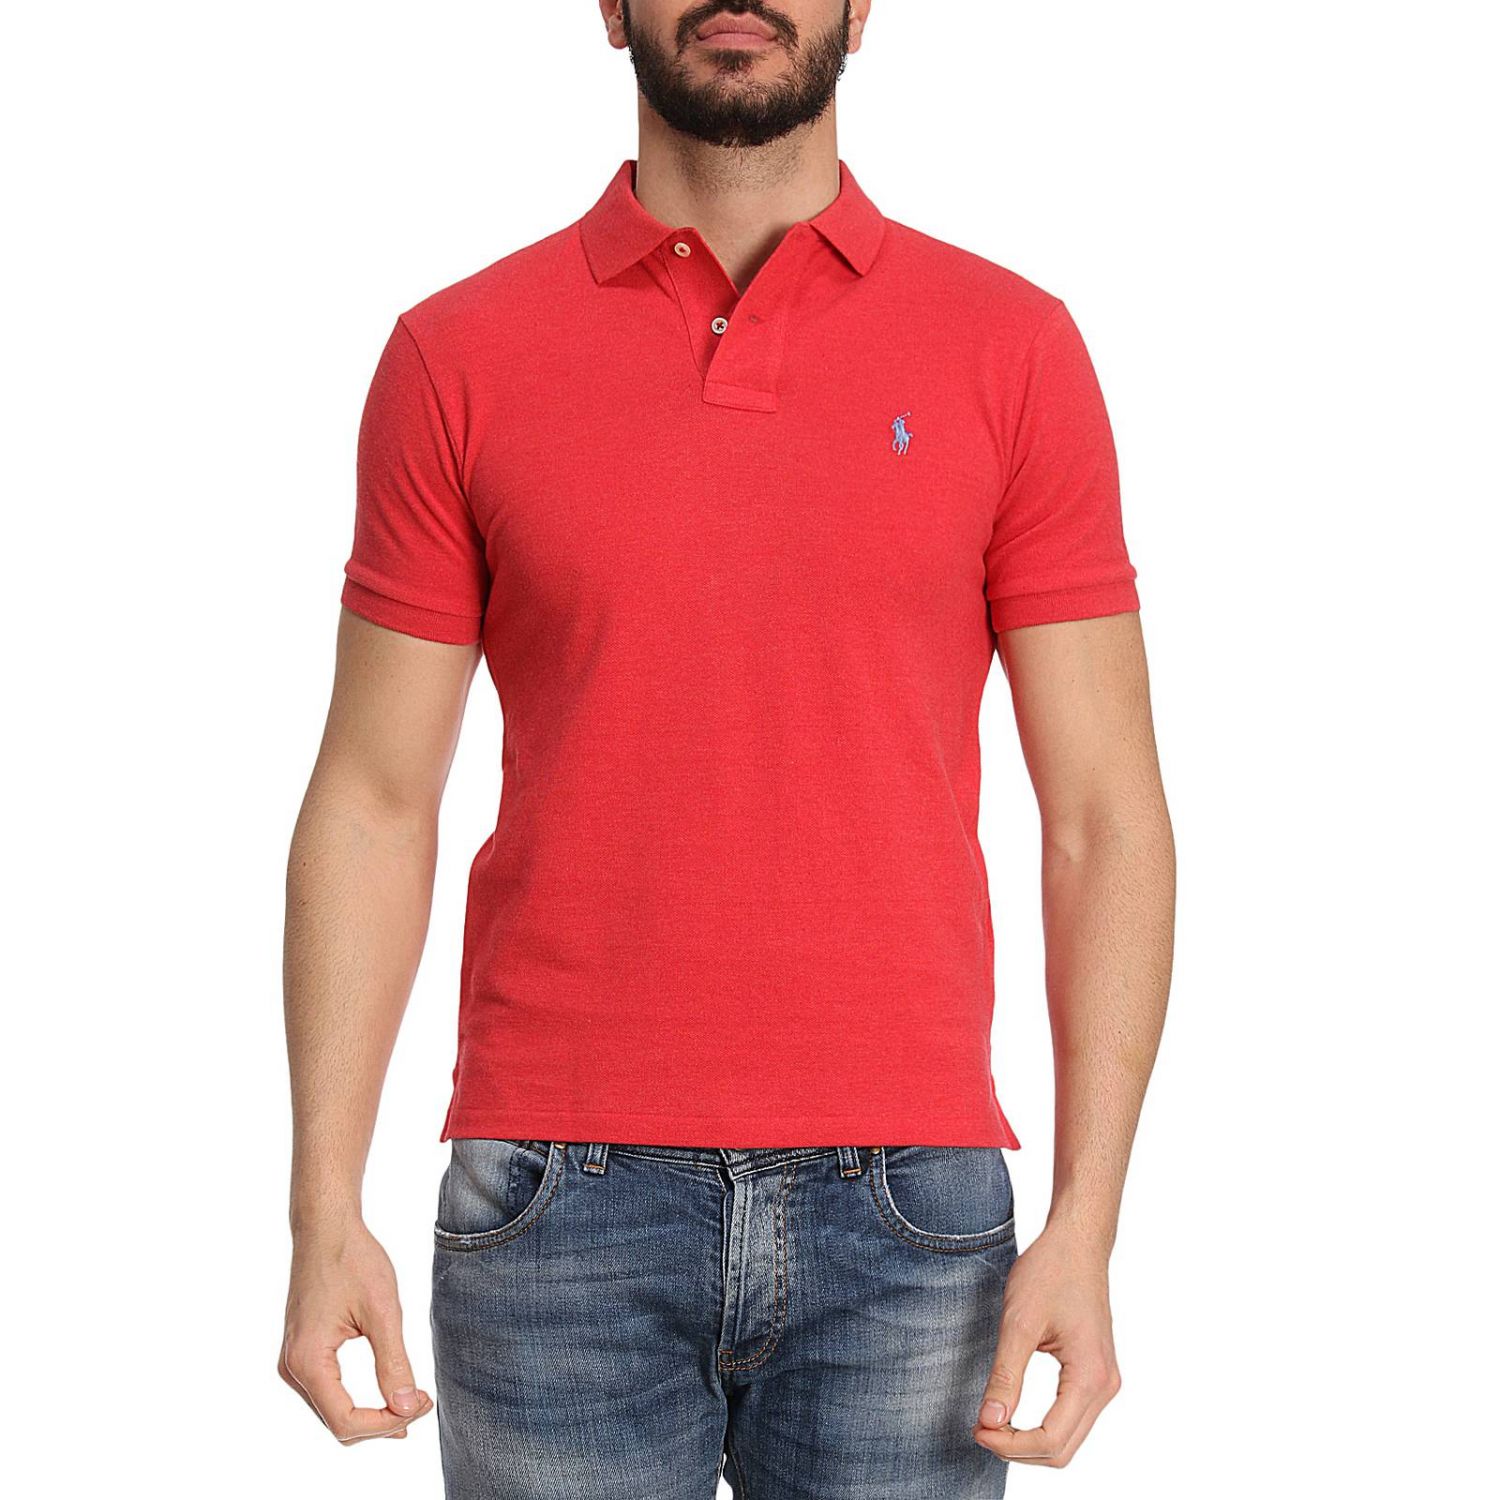 Polo Ralph Lauren Outlet: T-shirt men - Red | T-Shirt Polo Ralph Lauren ...